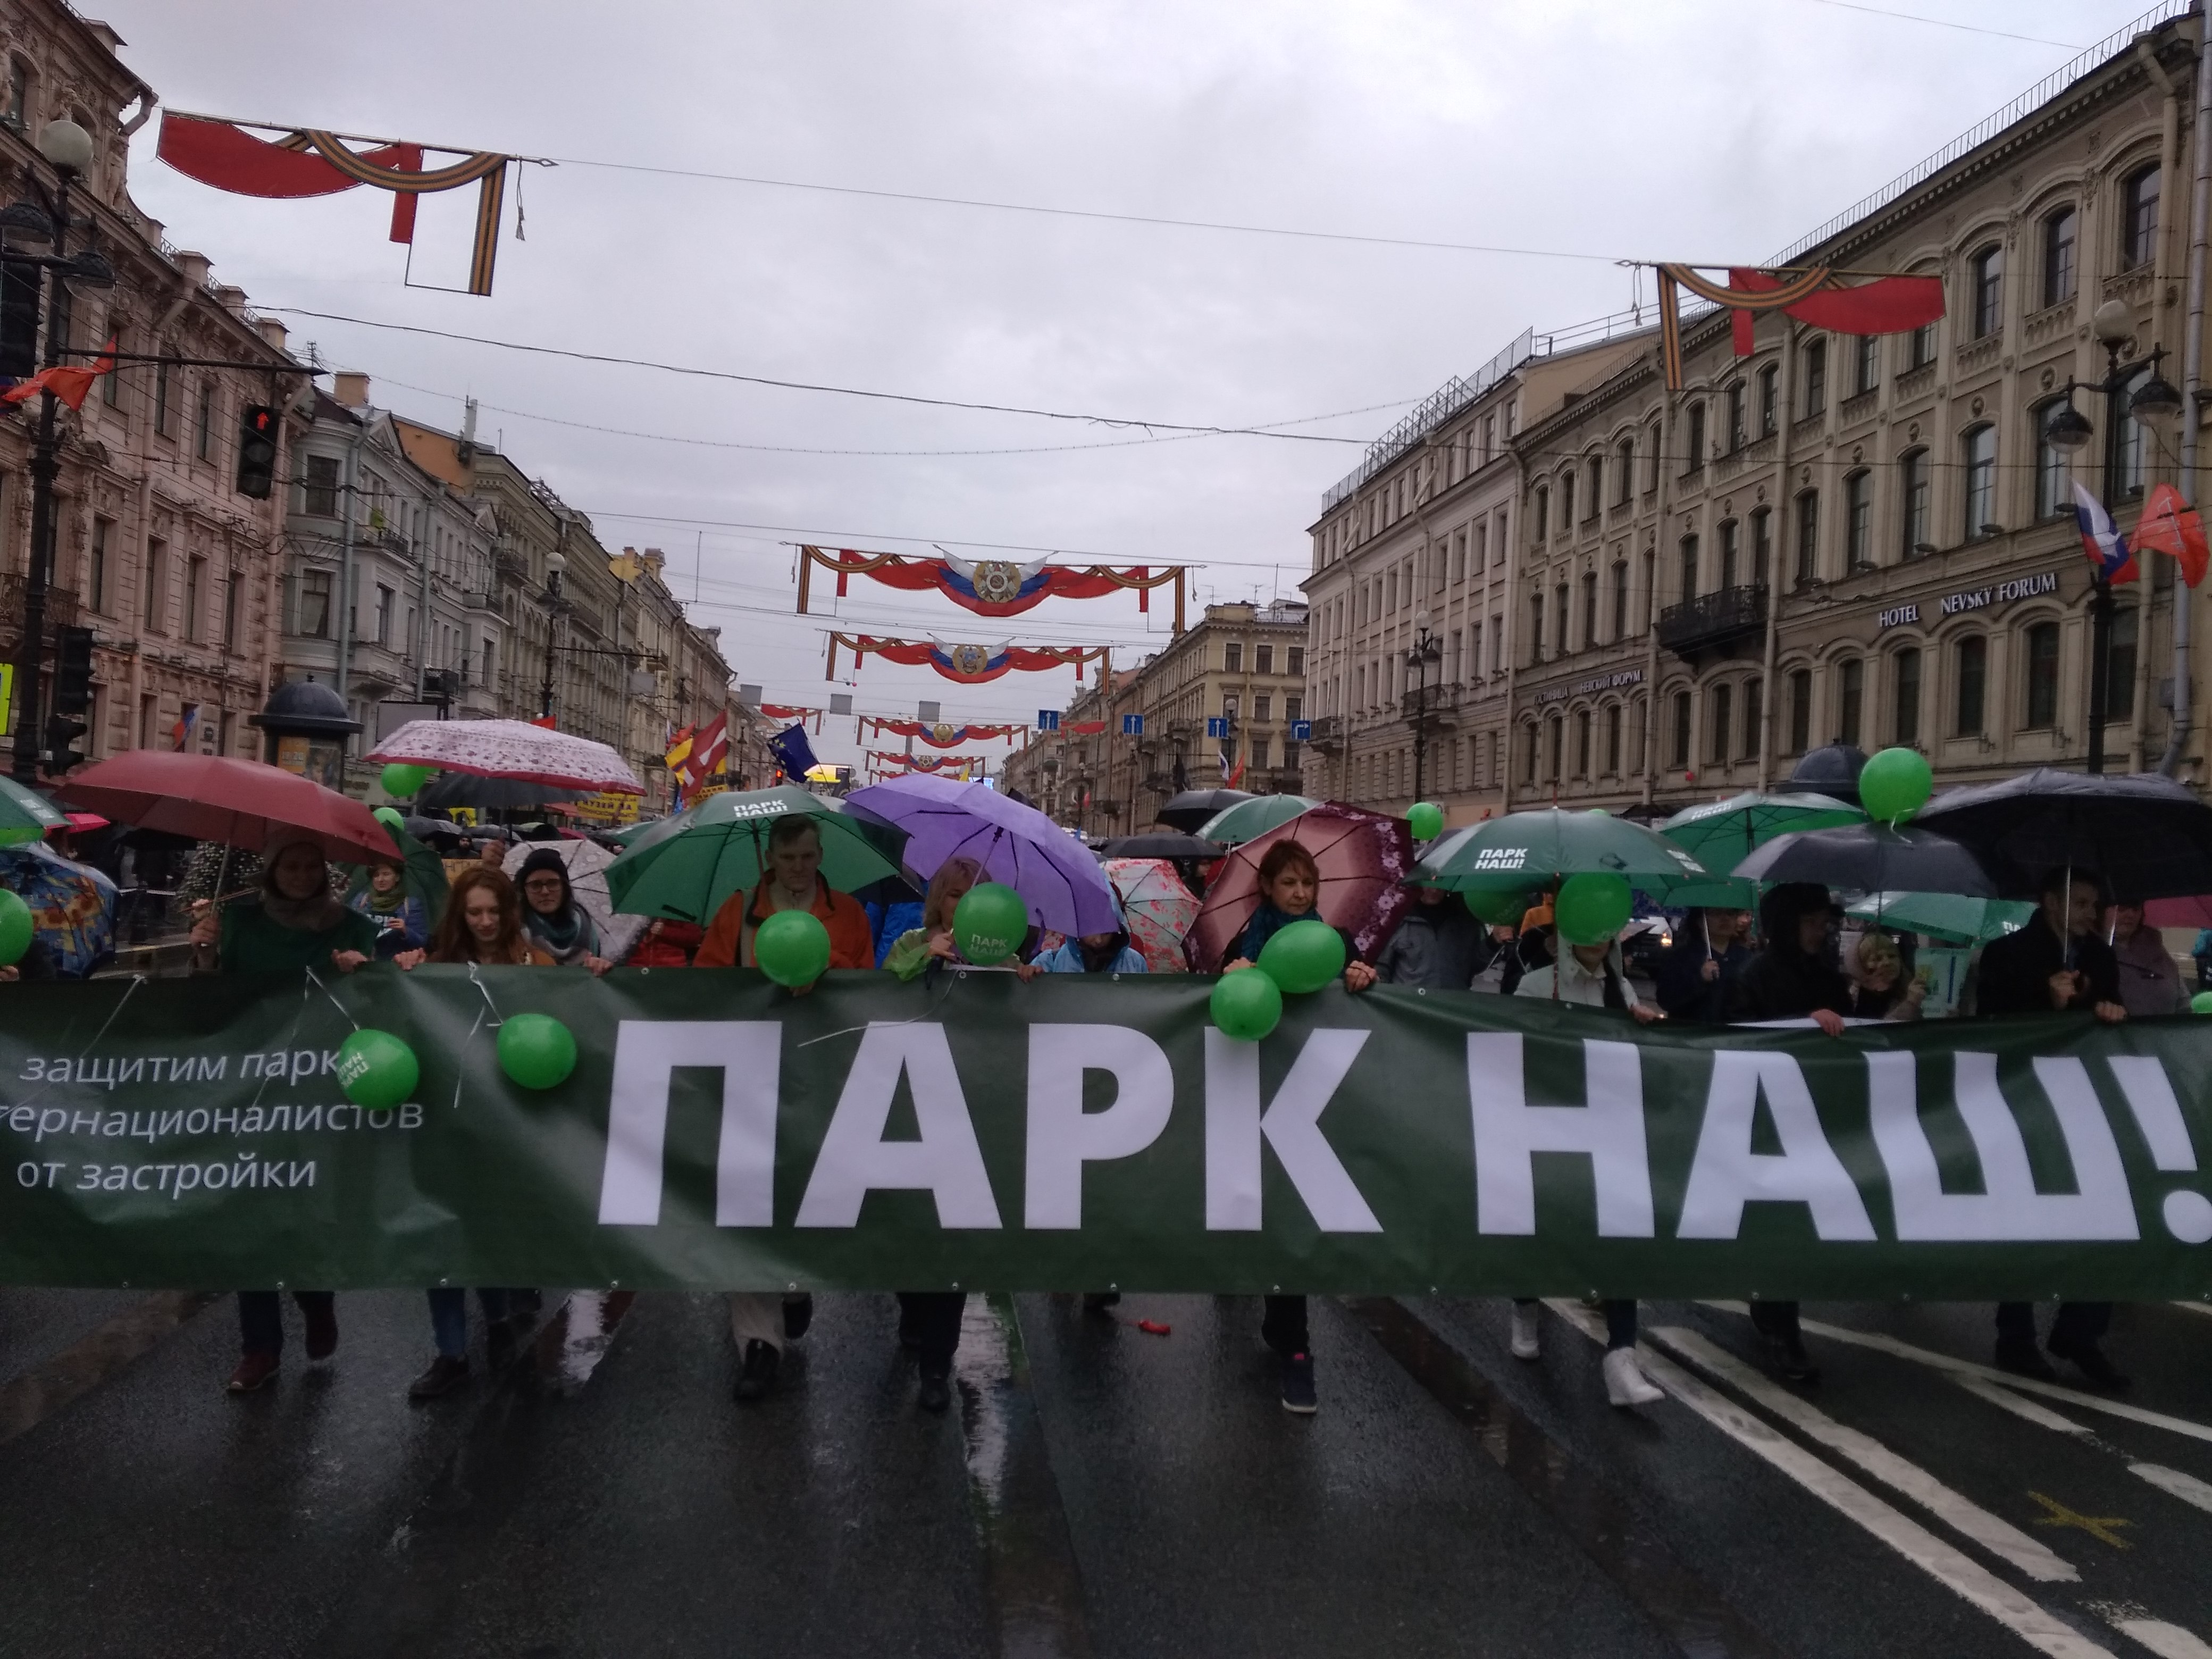 Подписывайтесь на страницу РБК Петербург в Facebook и смотрите видео, снятое на Первомайской демонстрации